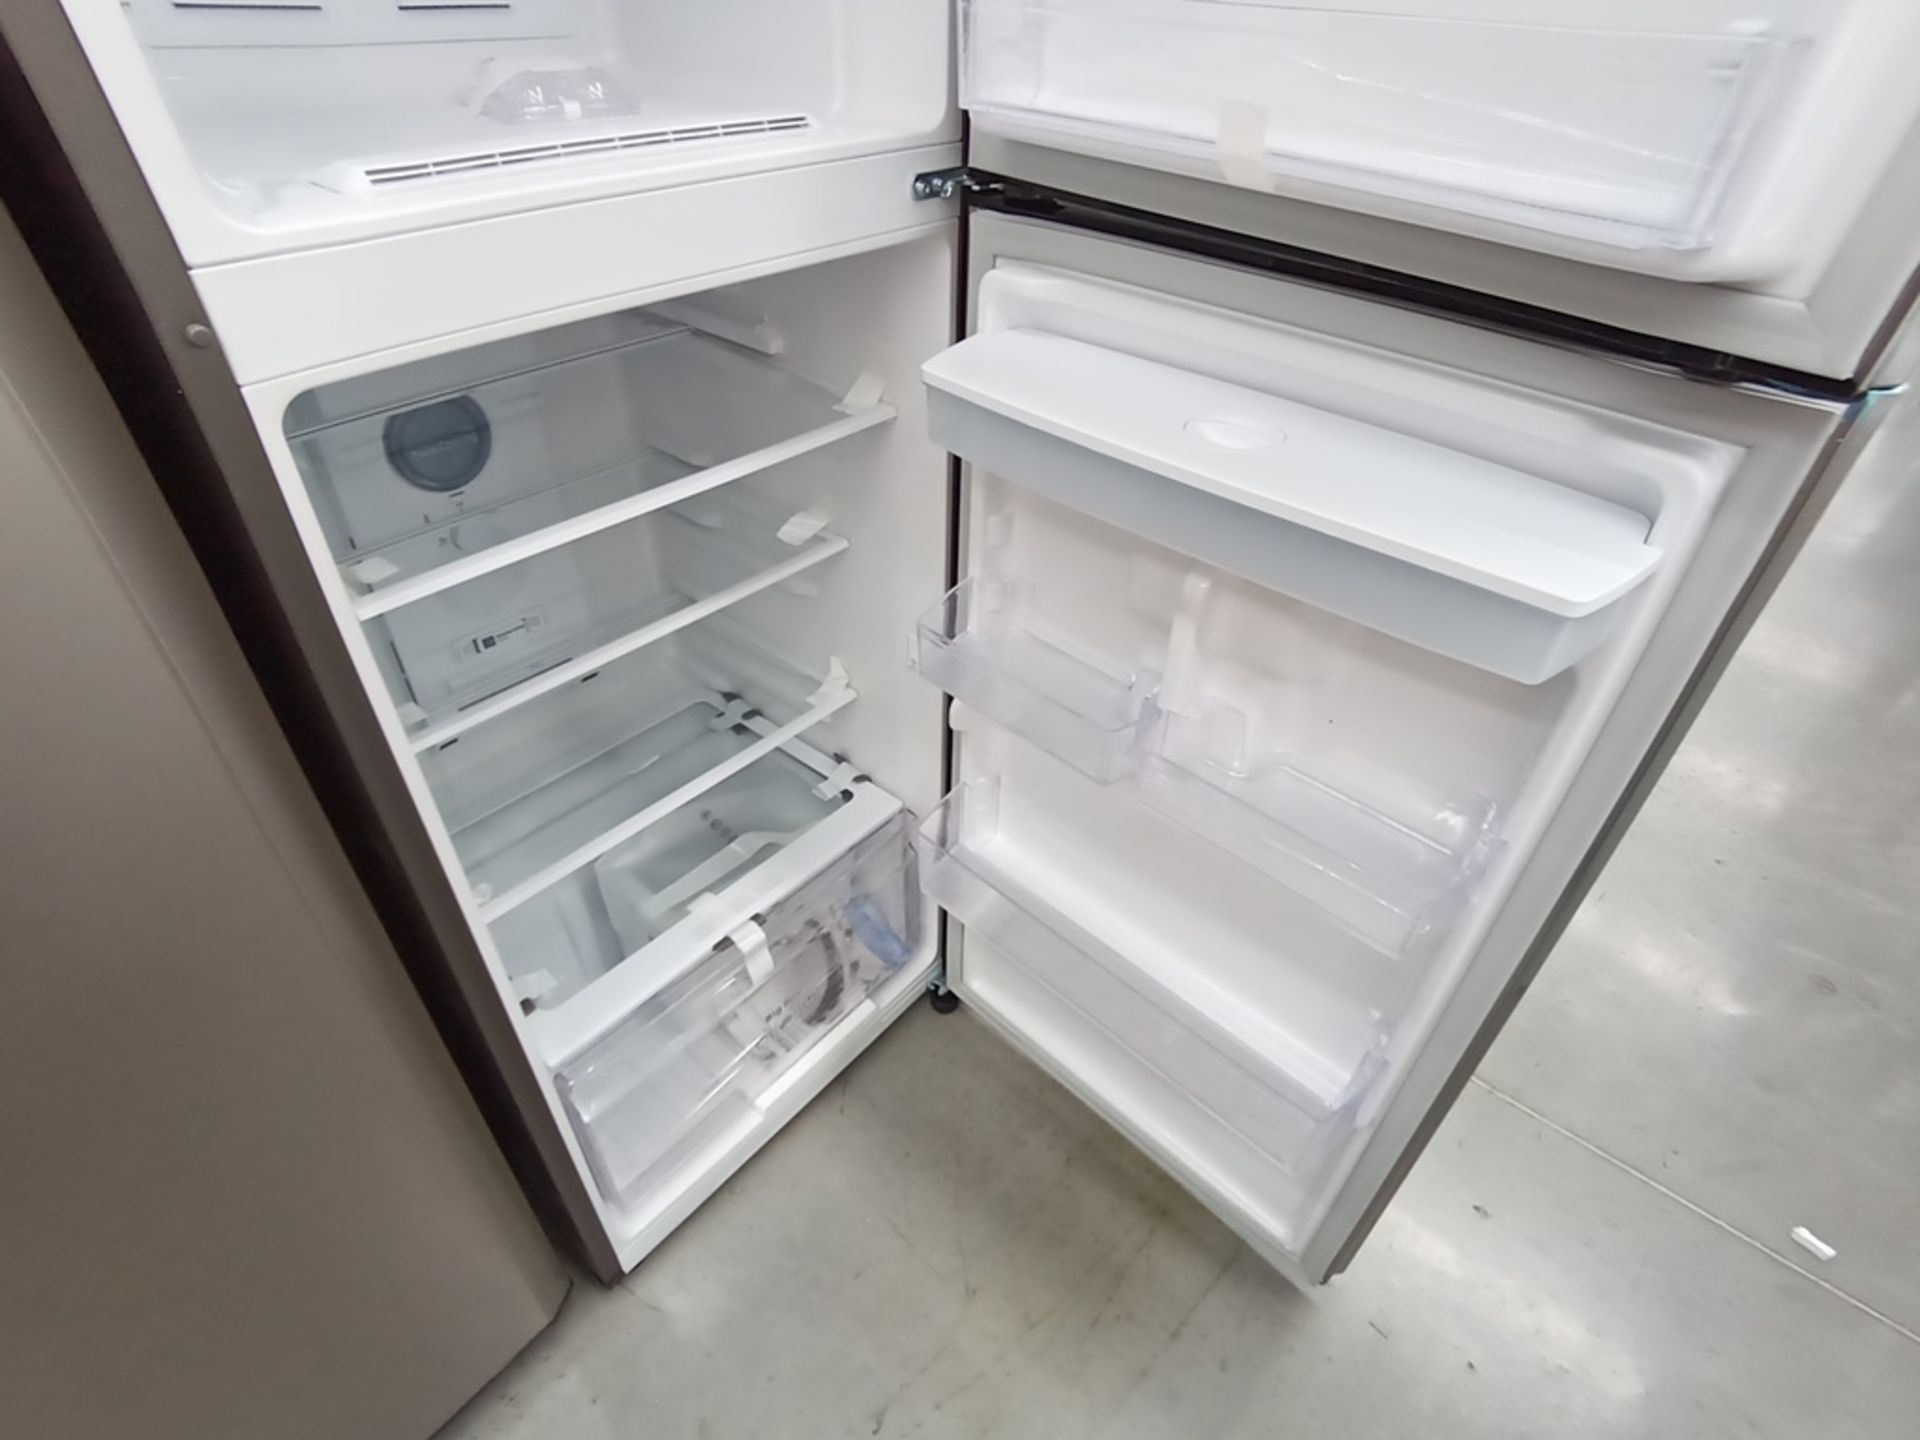 Lote de 2 refrigeradores contiene: 1 Refrigerador con dispensador de agua, Marca Samsung, Modelo RT - Image 10 of 15